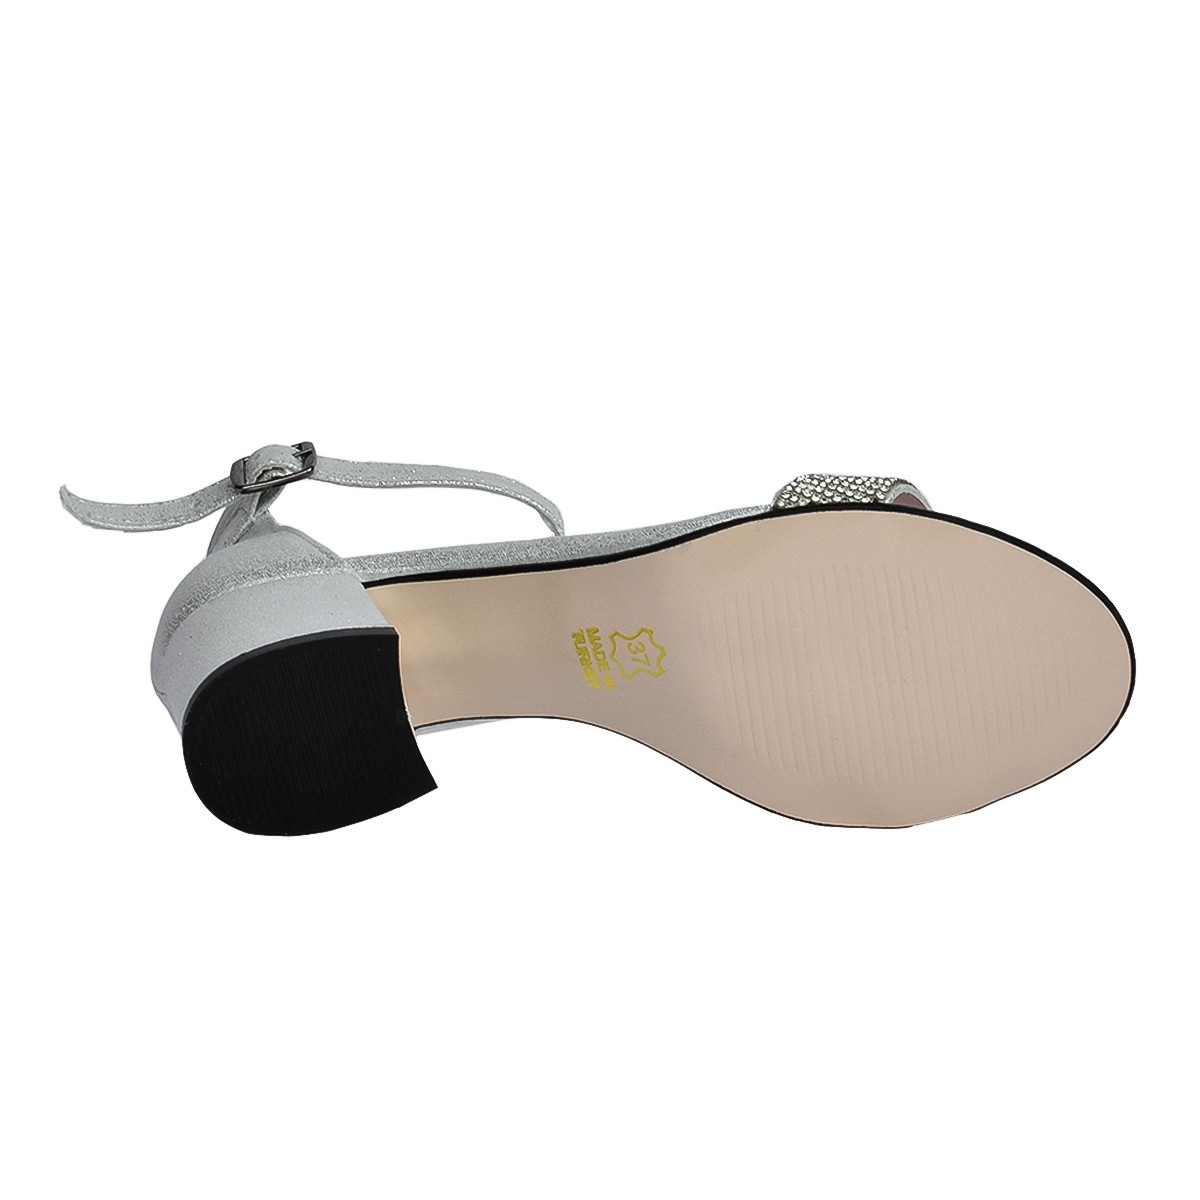 Flo 038-03 Taşlı 5 Cm Topuk Bayan Sandalet Ayakkabı Gümüş. 1